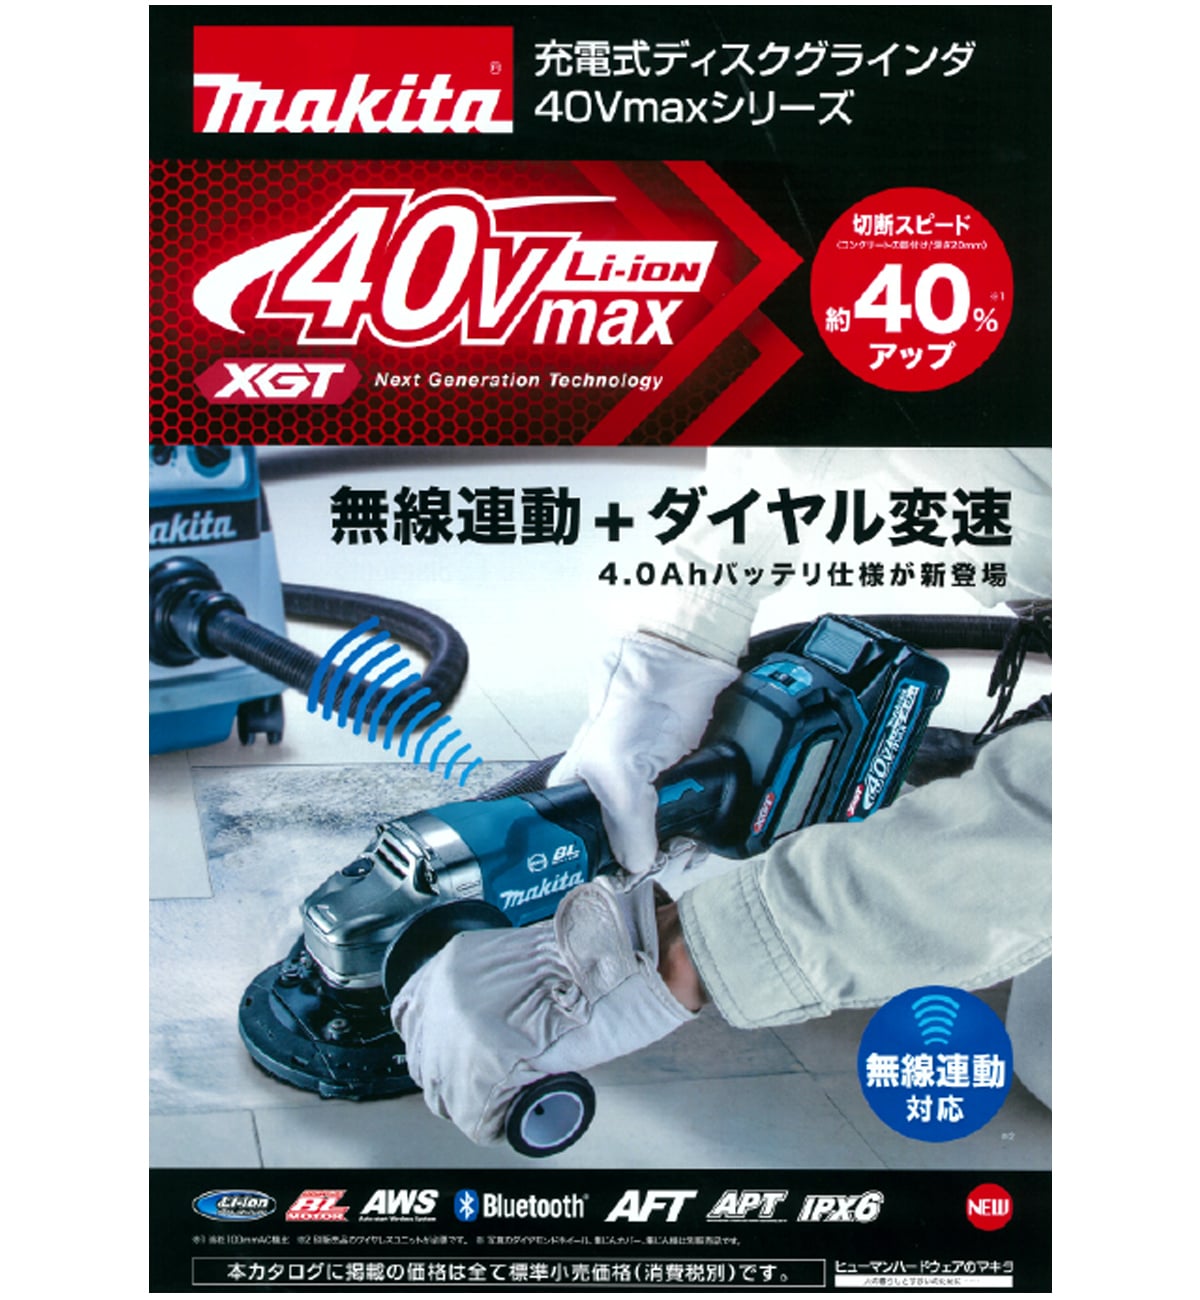 マキタ GA018GRMX 40Vmax充電式ディスクグラインダ125mm ウエダ金物